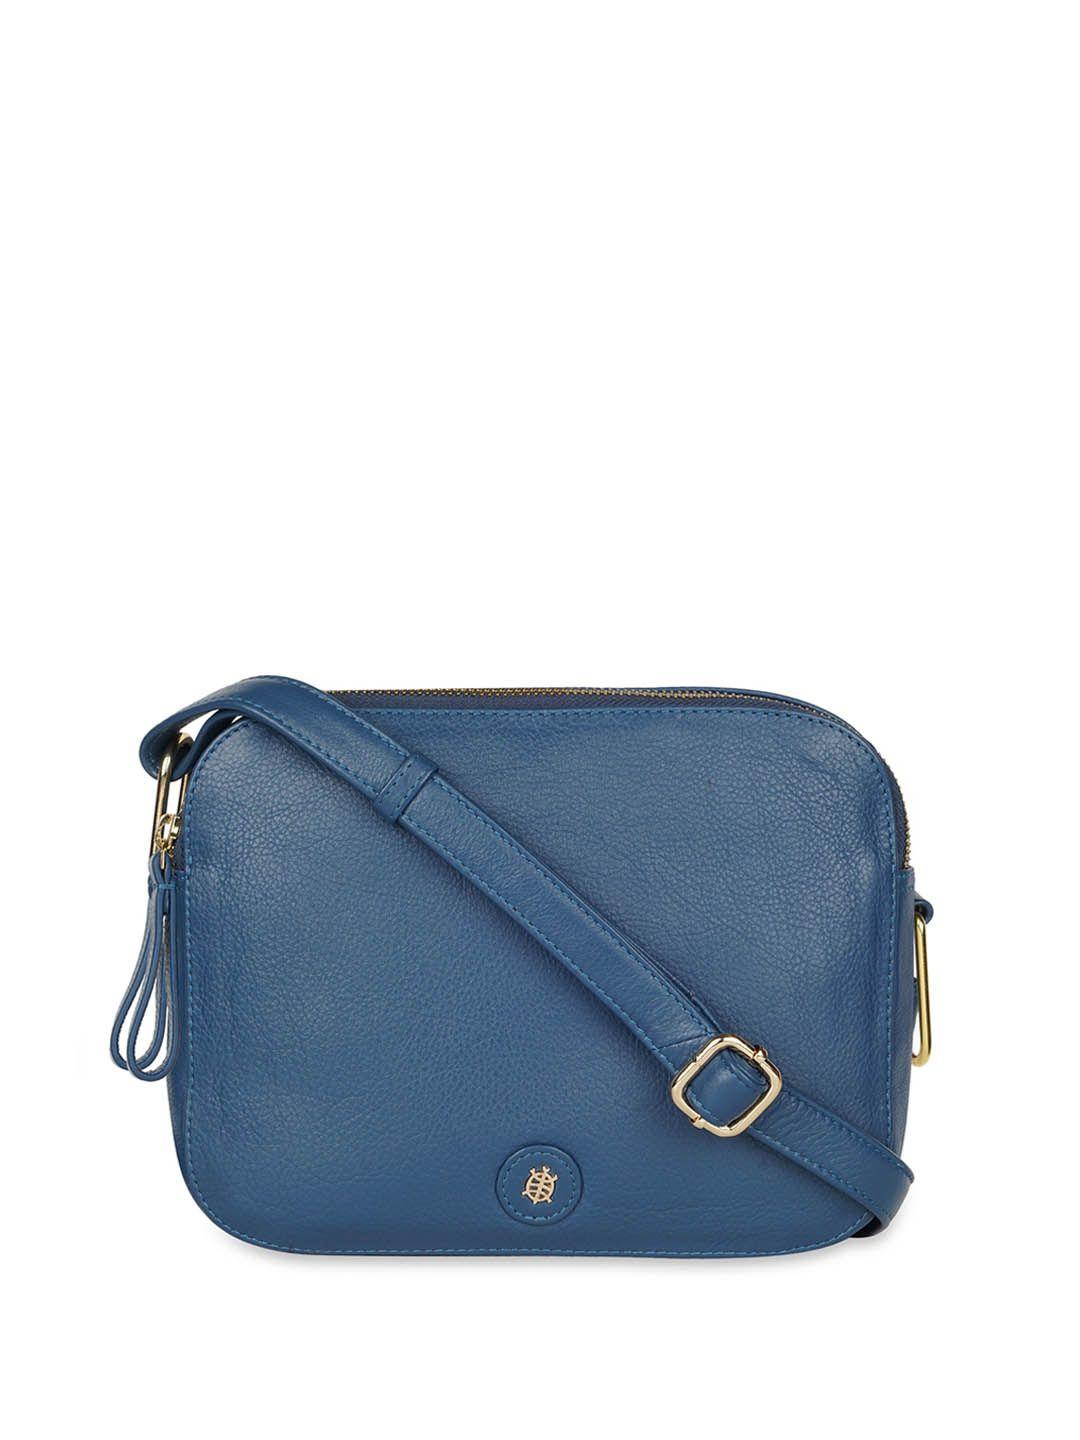 tortoise blue leather sling bag